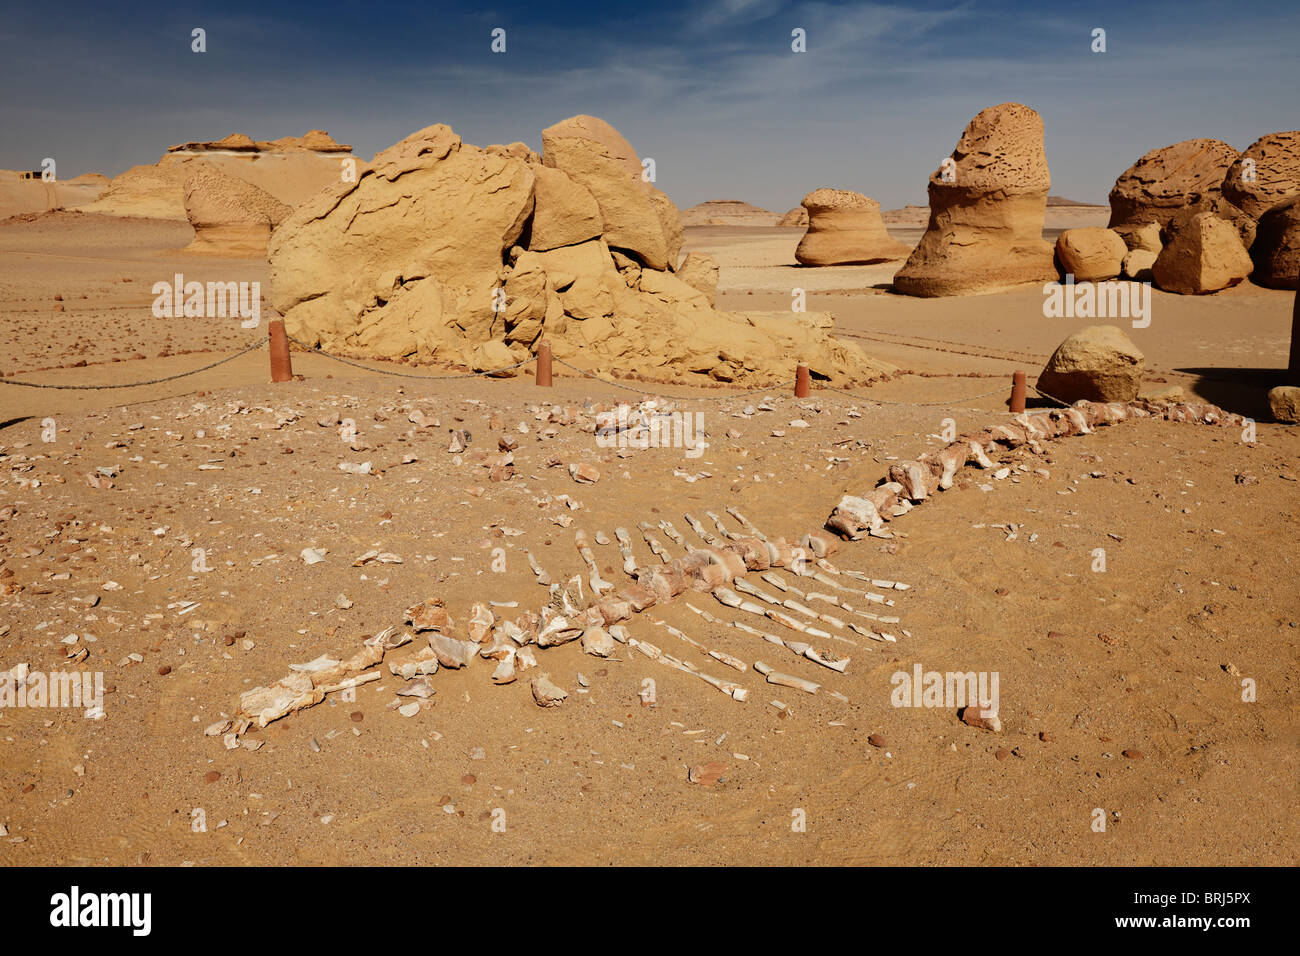 petrified skeleton of a whale, Wadi Hitan, western desert, Egypt, Arabia, Africa Stock Photo